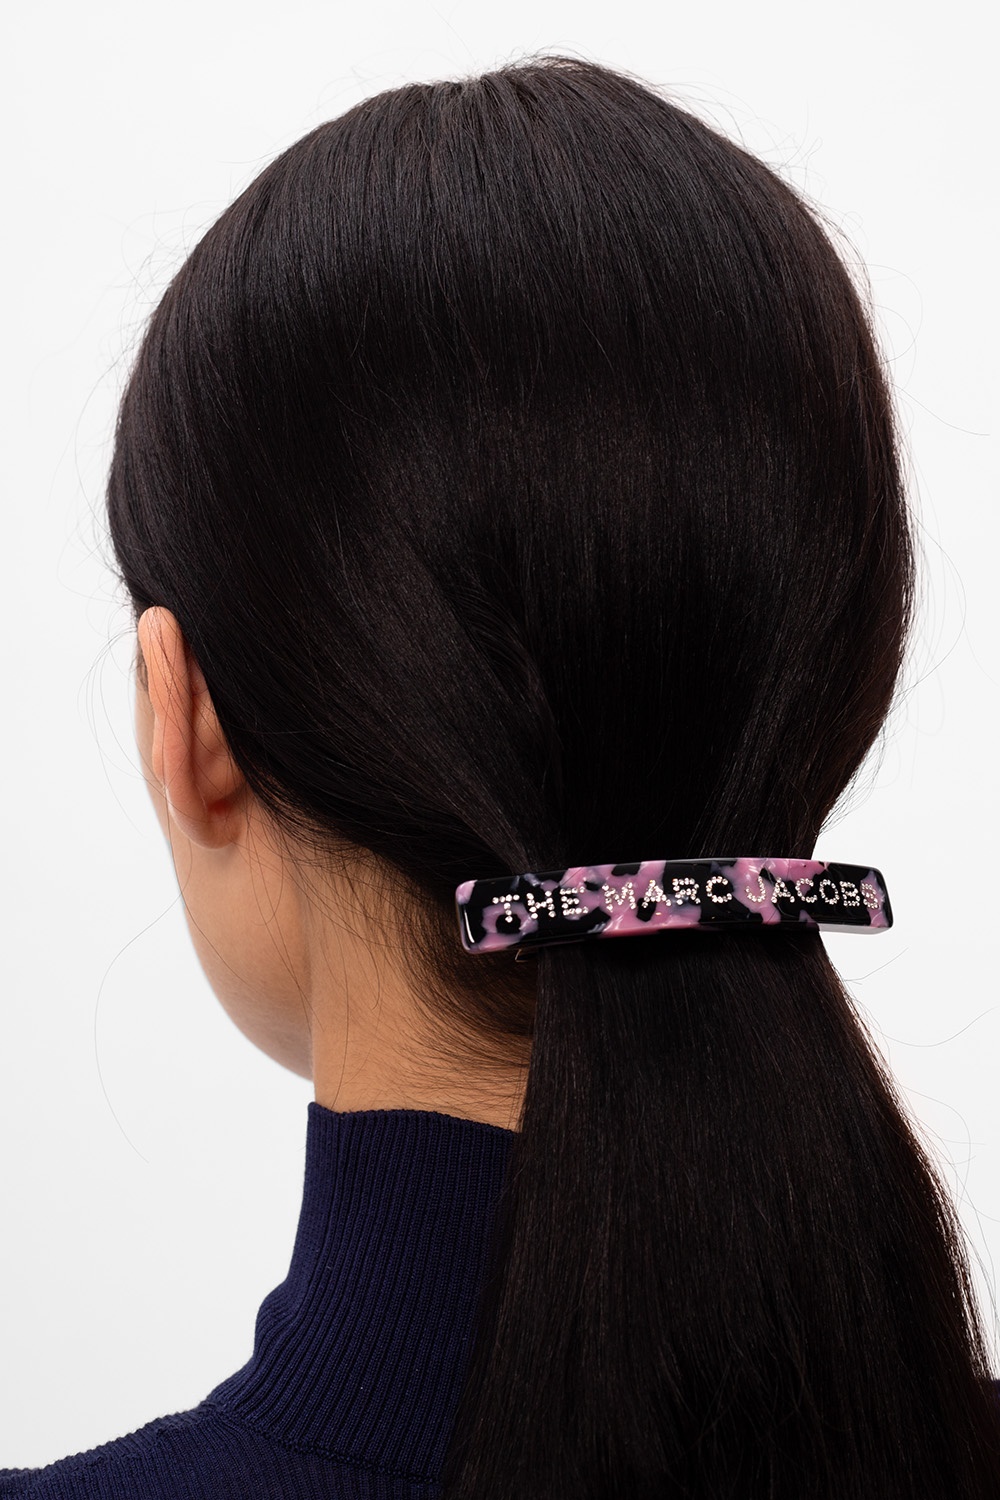 Marc hair clip Women's Accessories |